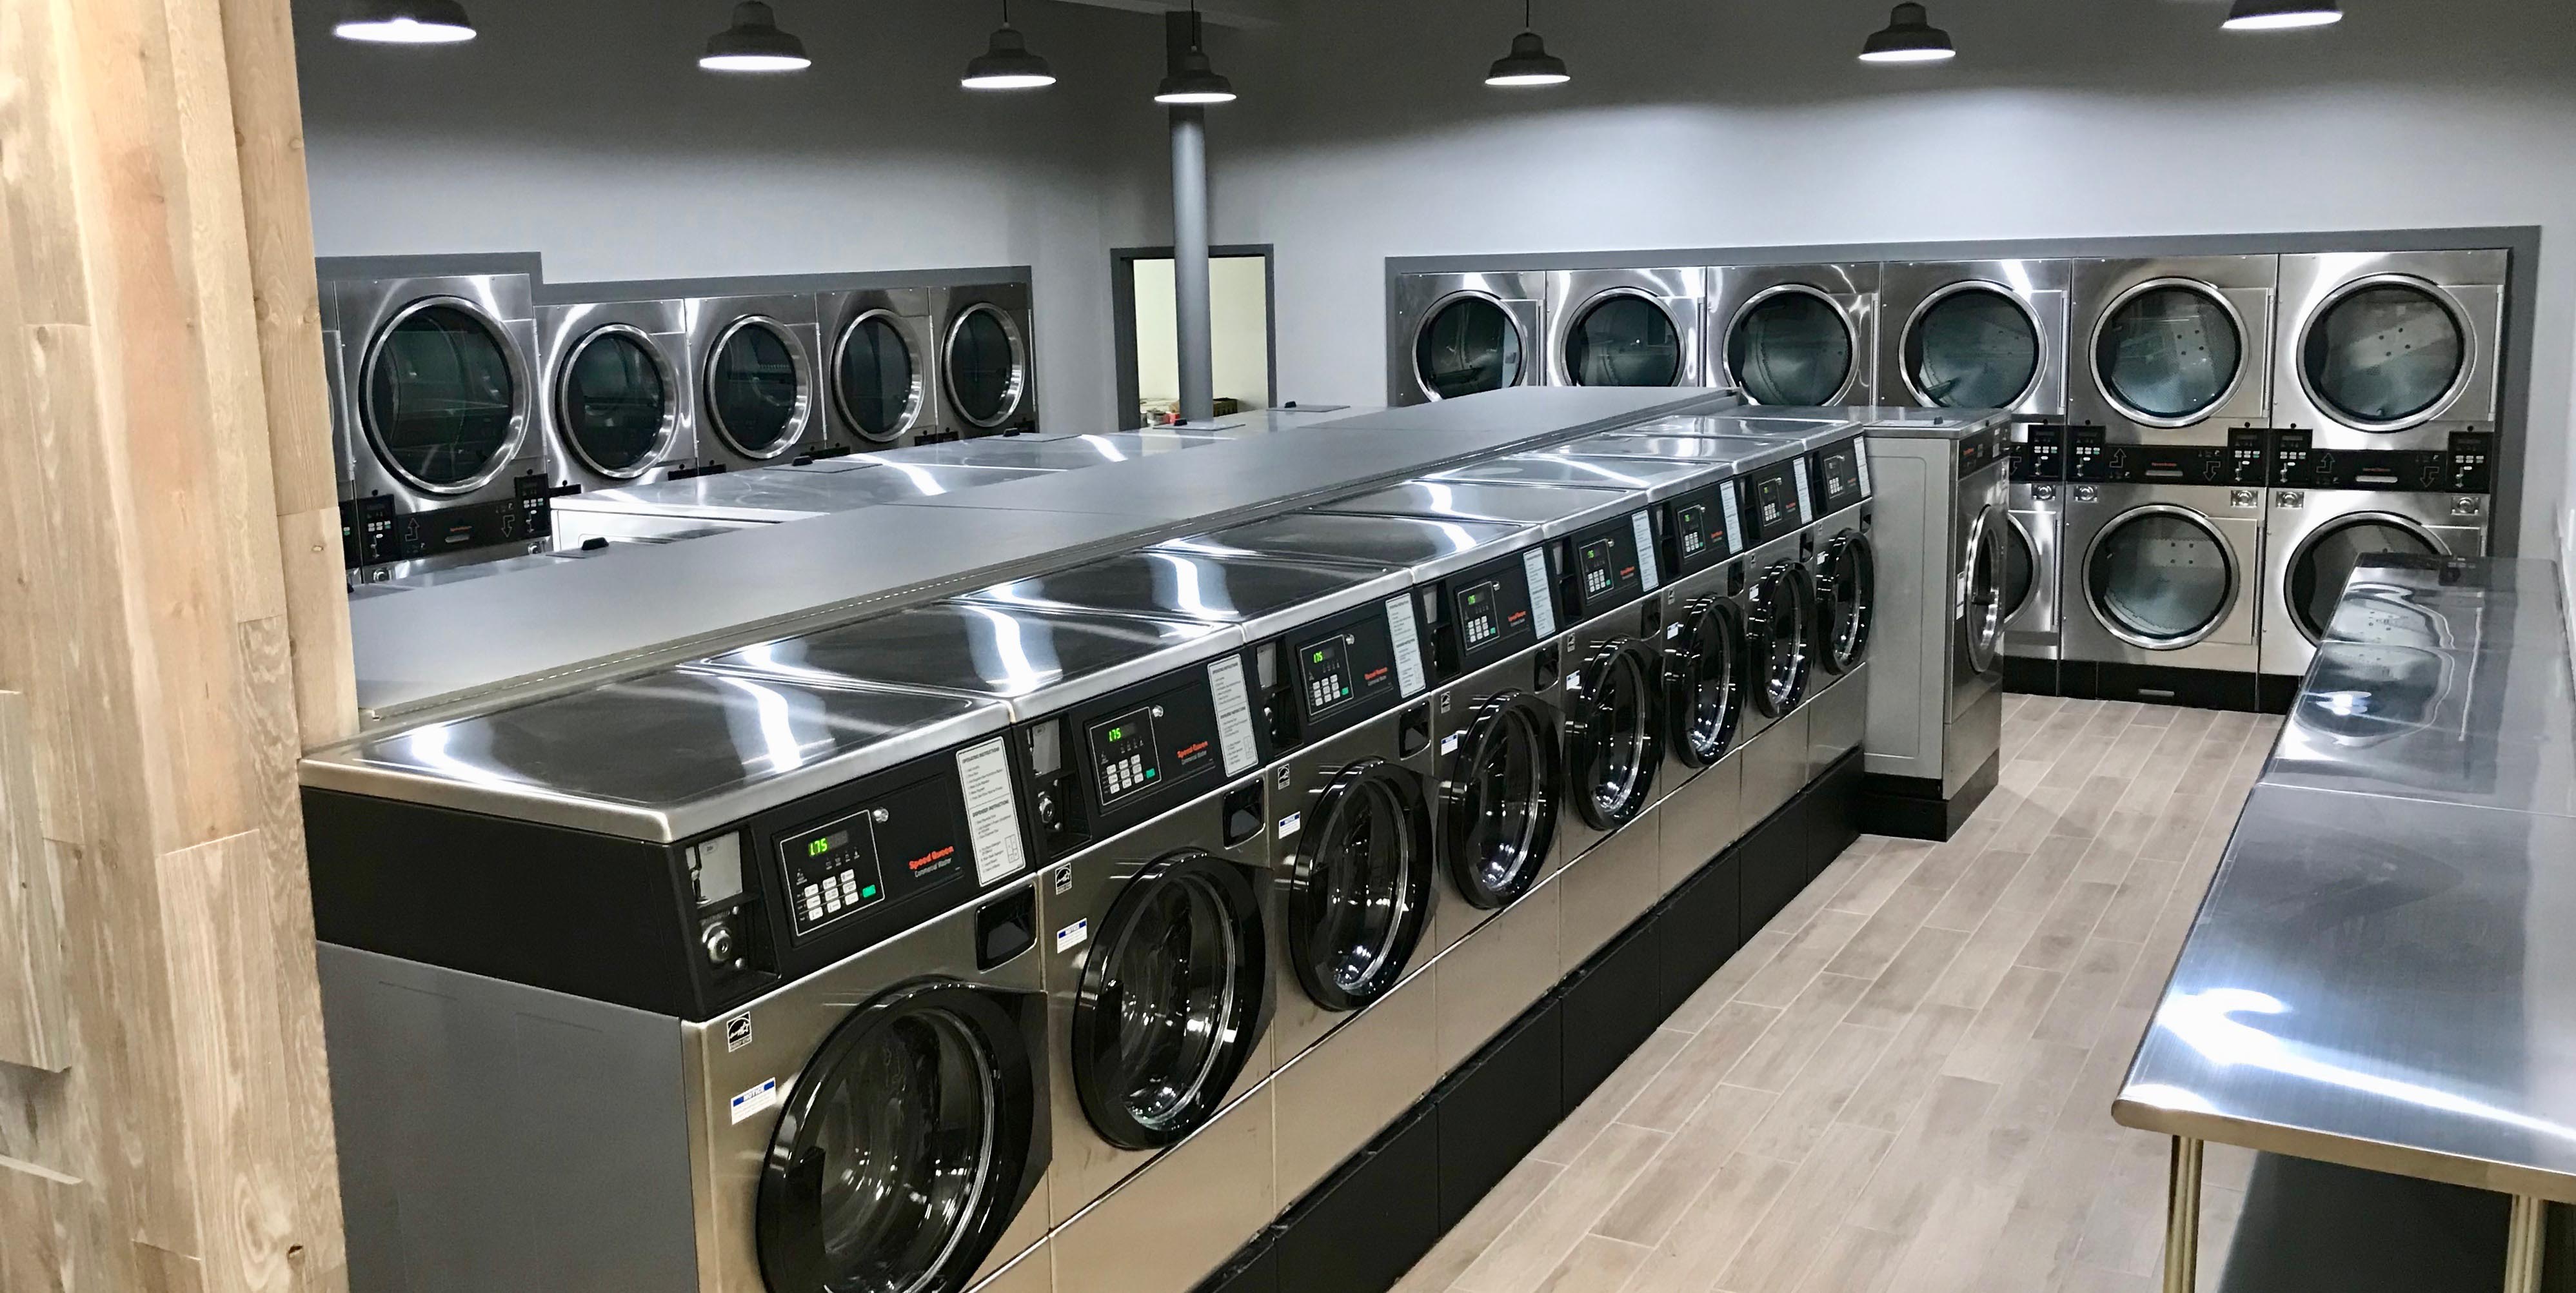 Rezultat Poiska Google Dlya Https Www Coinomatic Com Assets Uploads Slideimages Pinksy 960 Commercial Laundry Service Laundromat Business Commercial Laundry